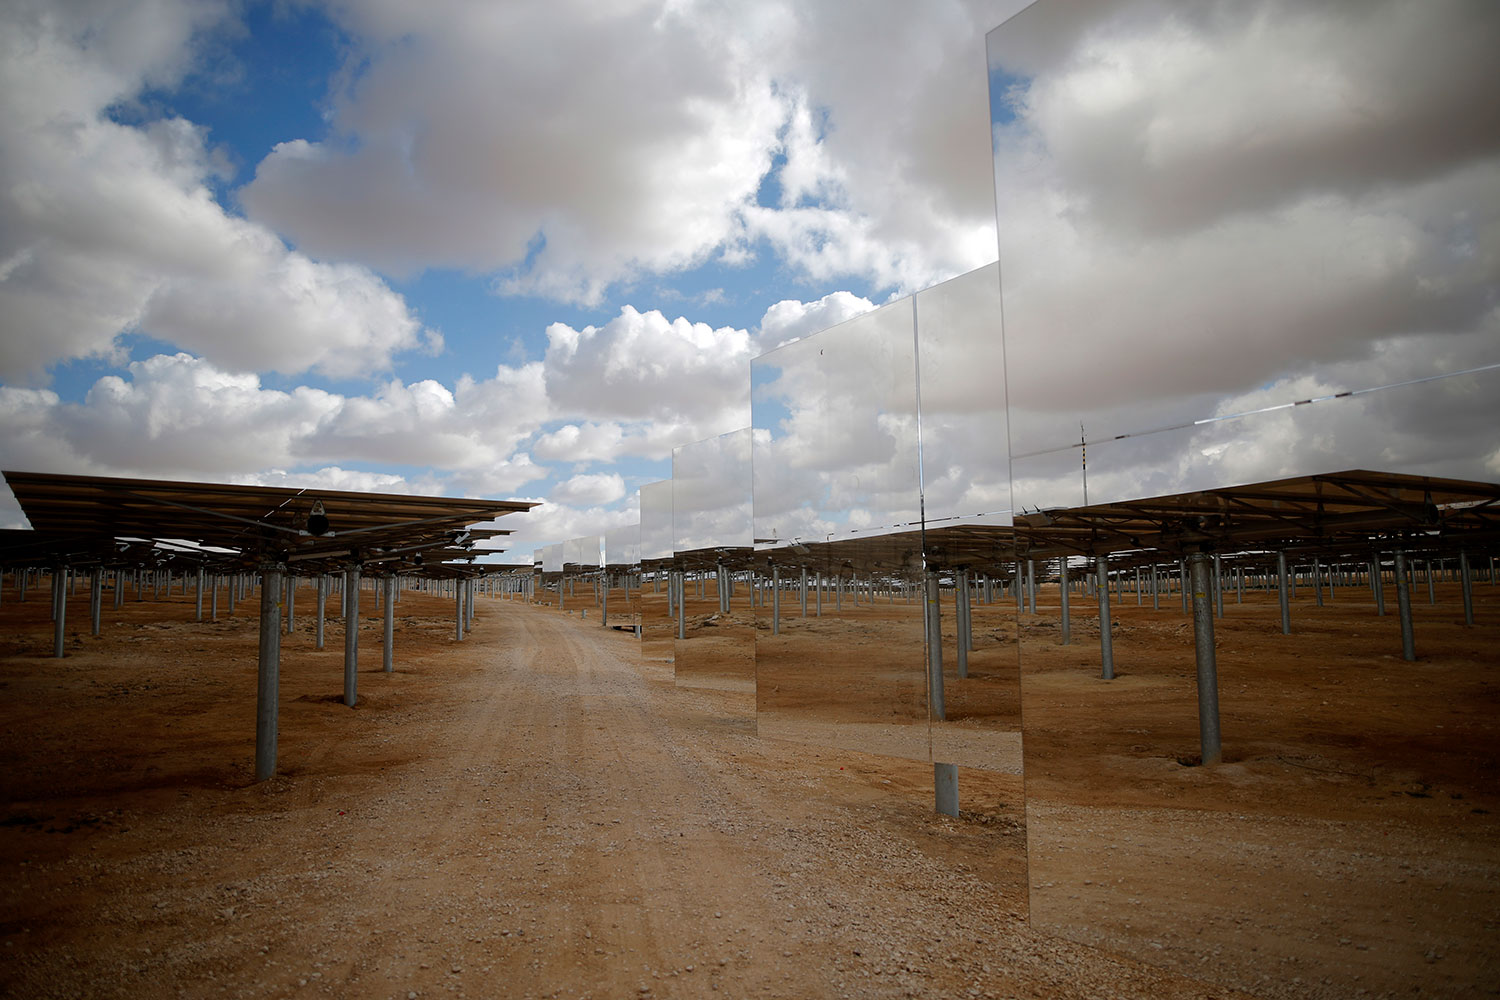 Israel construye la torre solar más grande del mundo